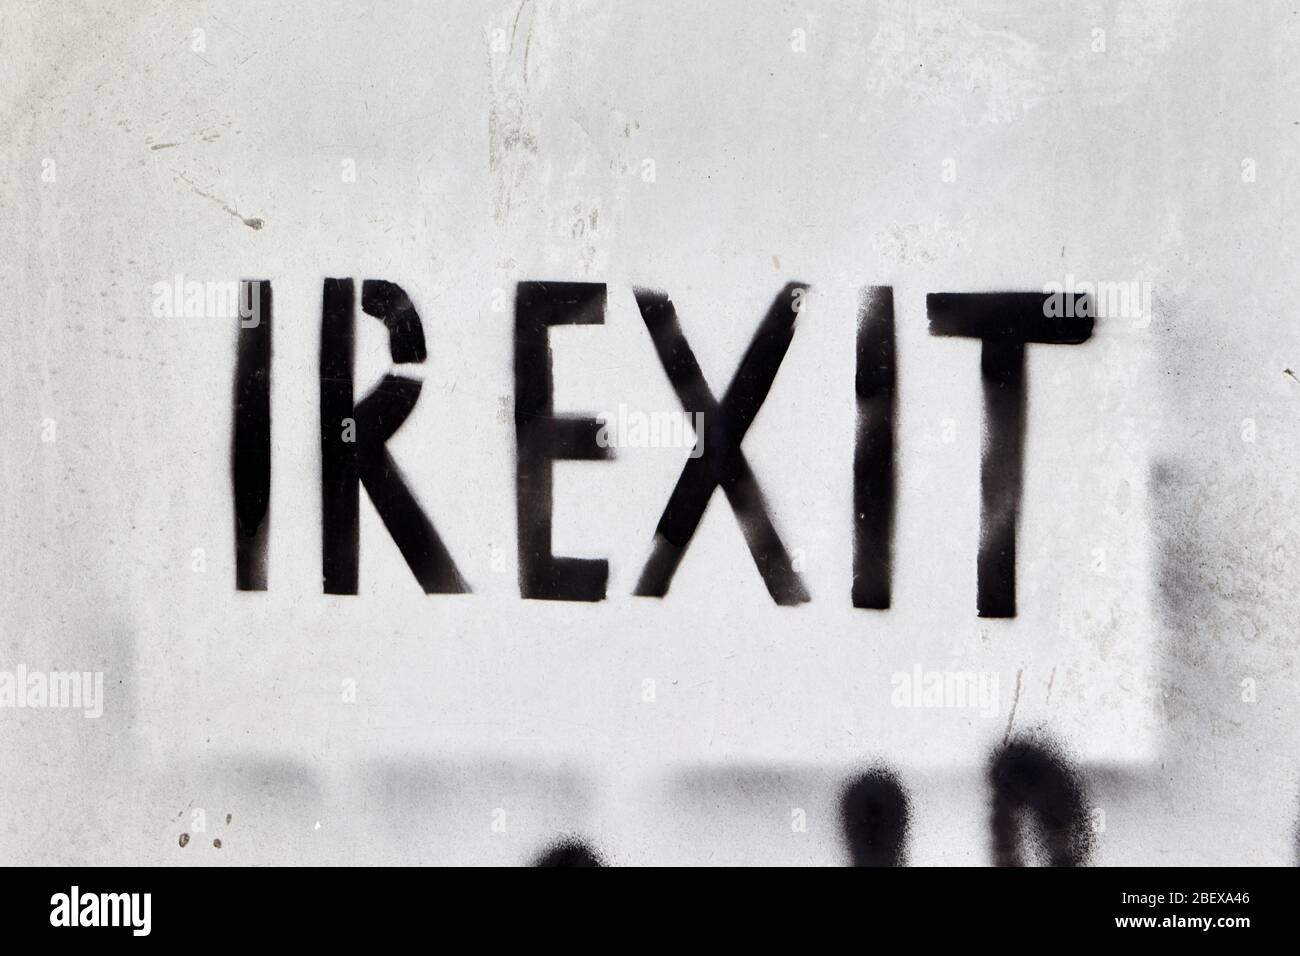 Gli spruzzi dipindevano irexit grigi che invocavano l’uscita dell’Irlanda dall’UE come la brexit Foto Stock